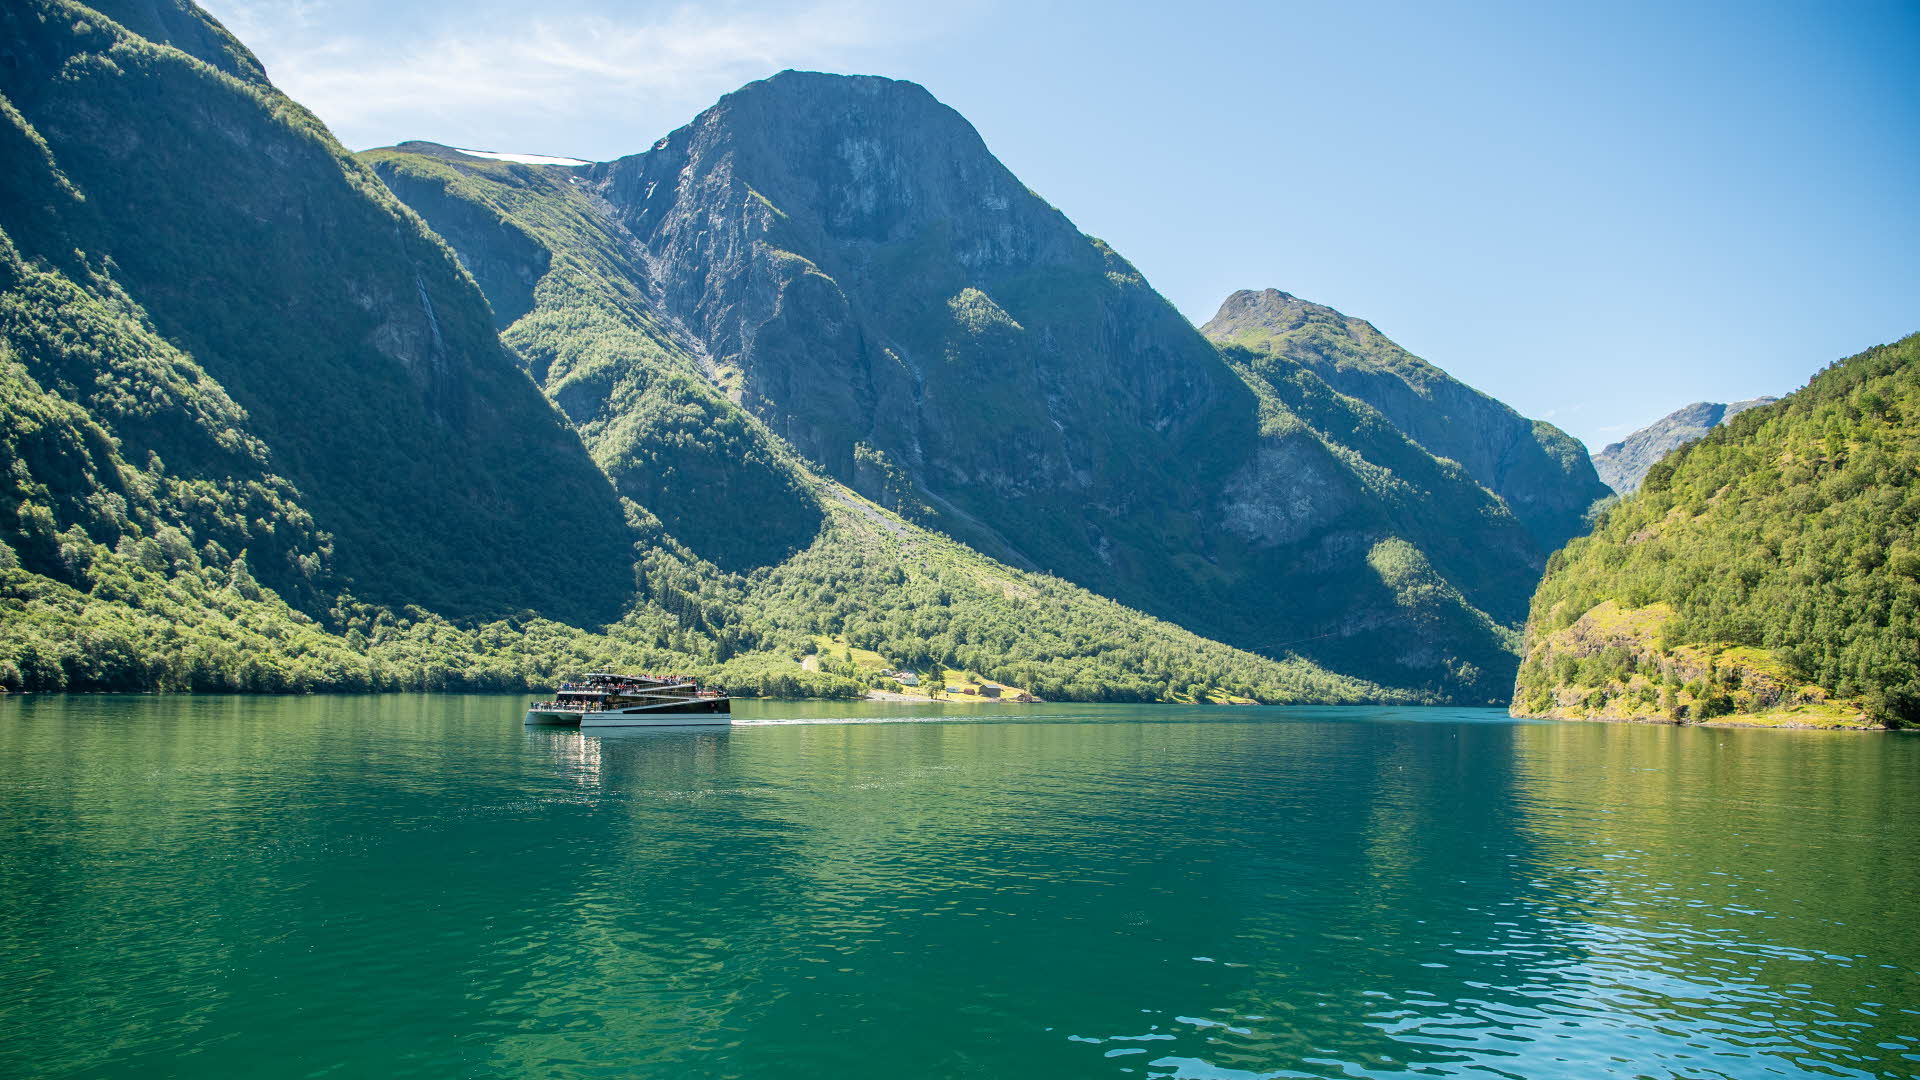 Le bateau Future of the Fjords, entouré de hautes montagnes, naviguant sur les eaux calmes du Nærøyfjord par une journée d’été